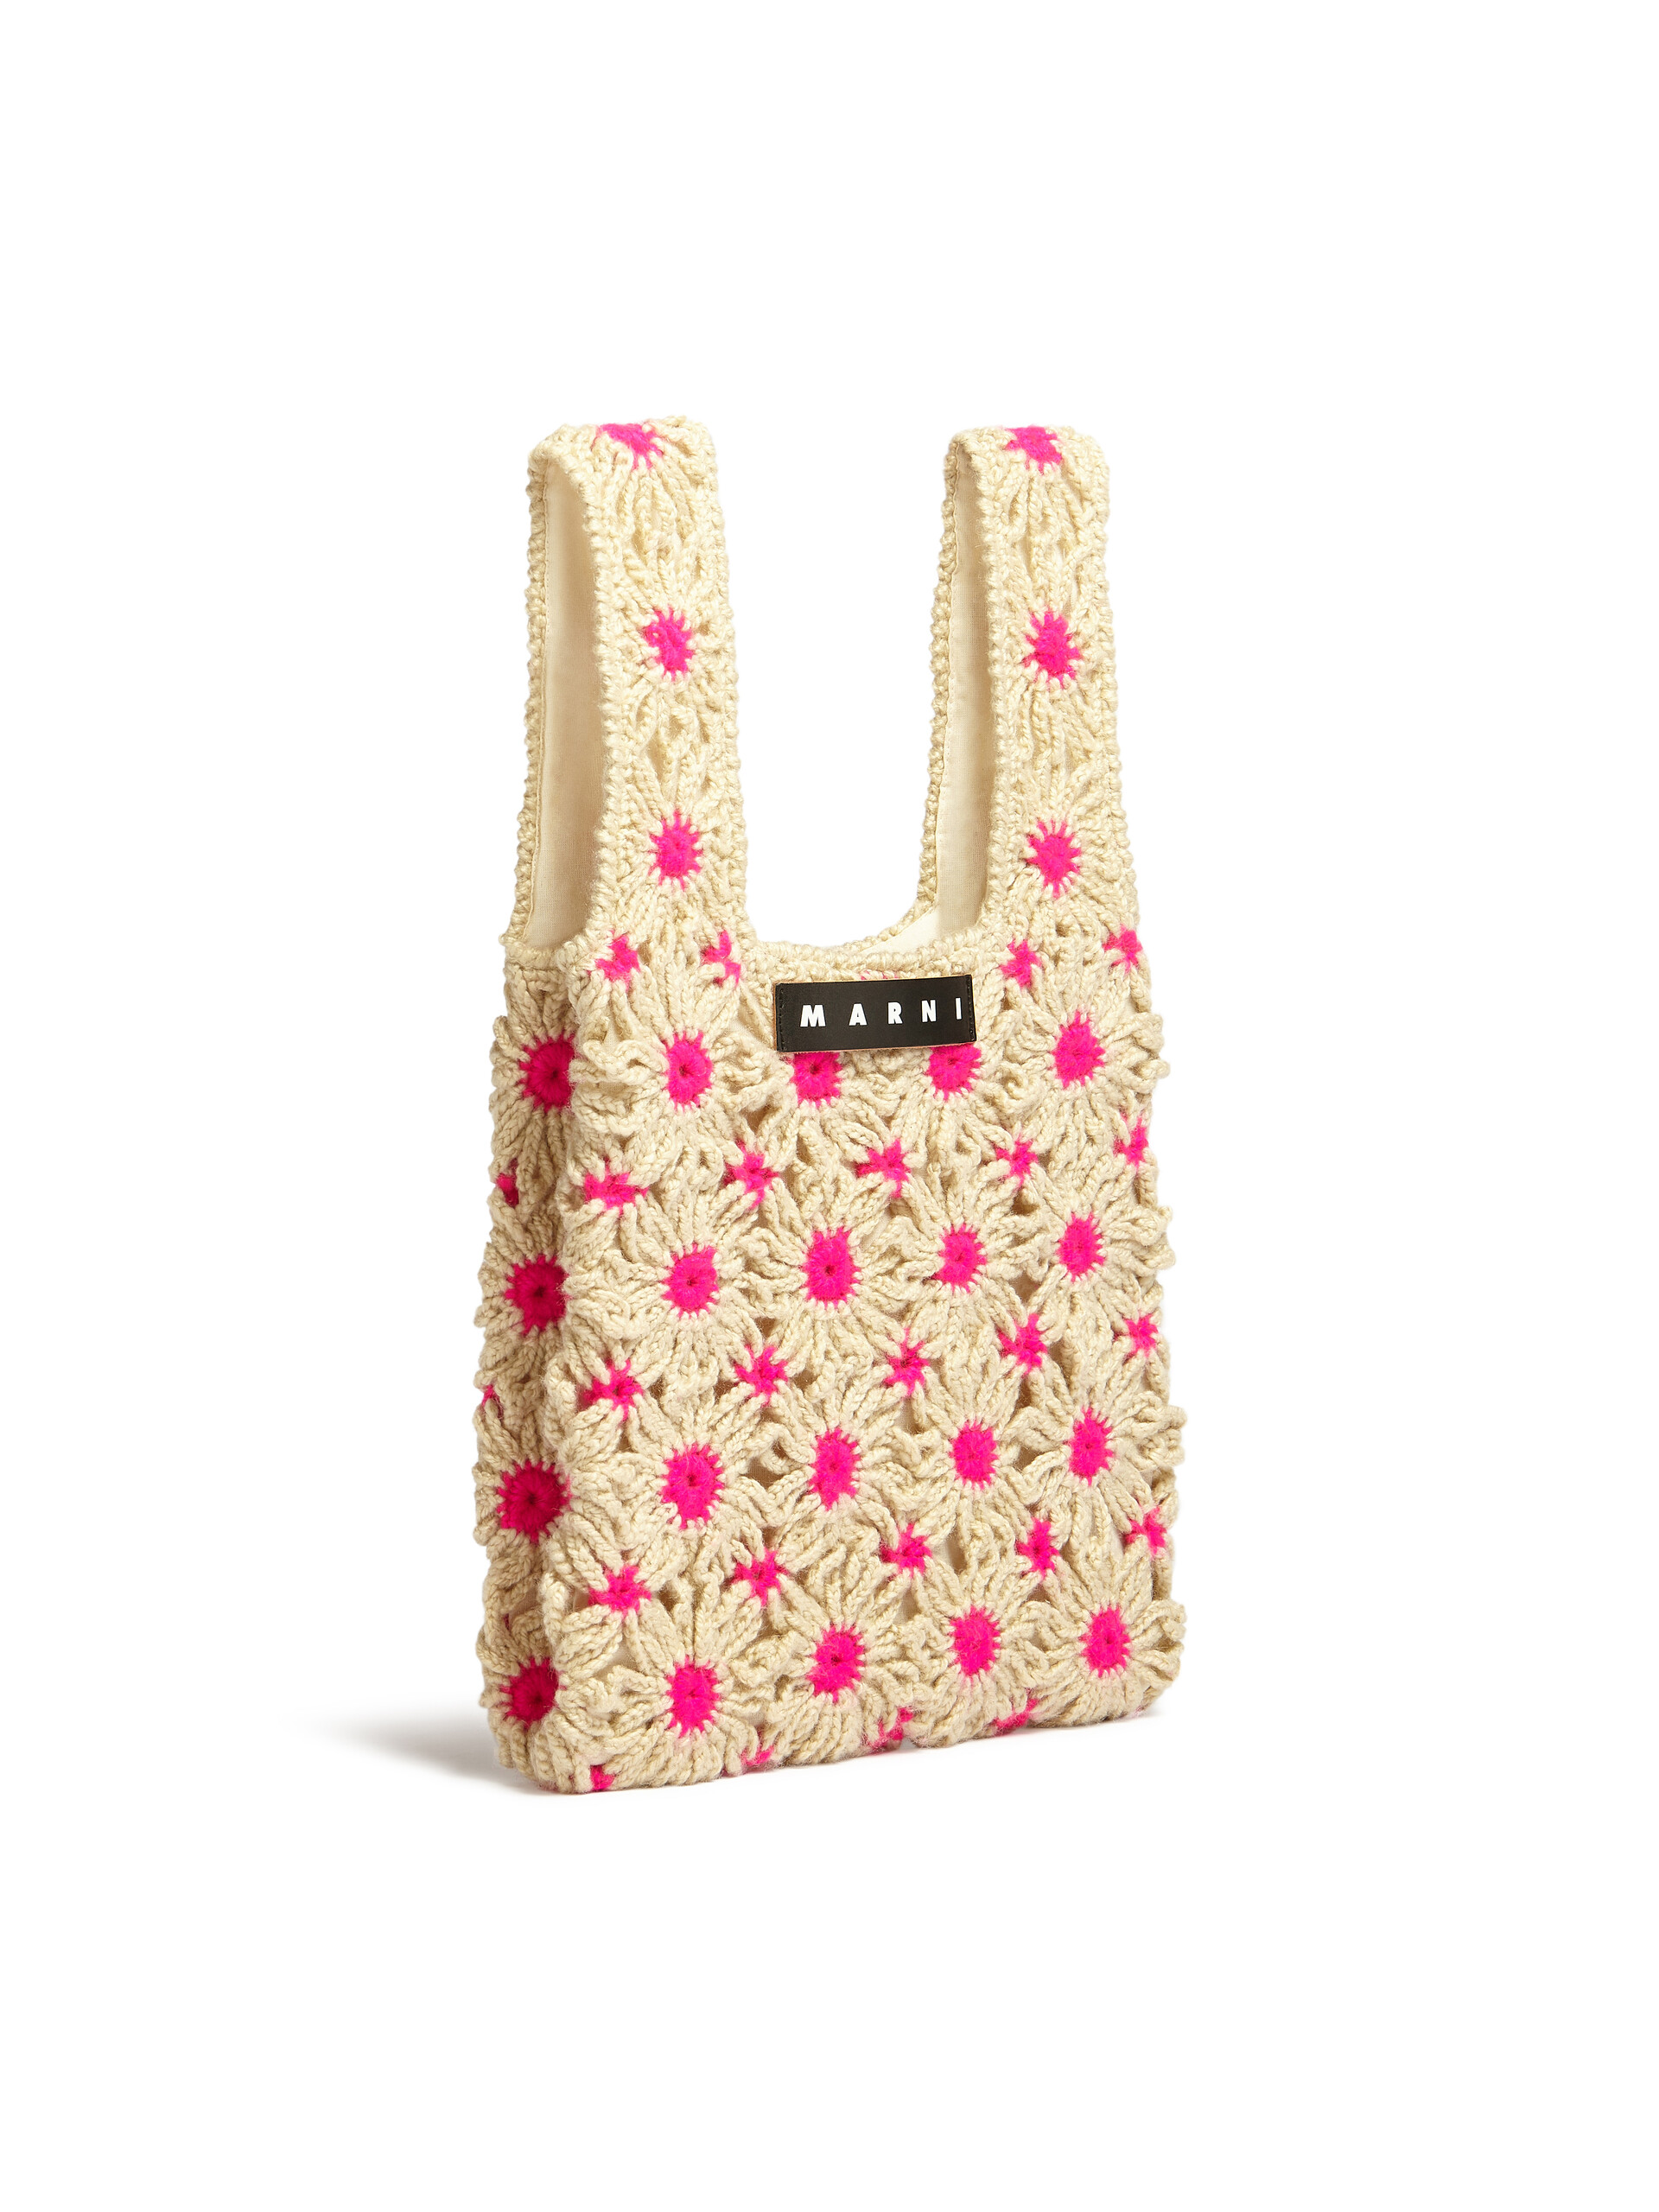 MARNI MARKET FISH bag in pink crochet | Marni